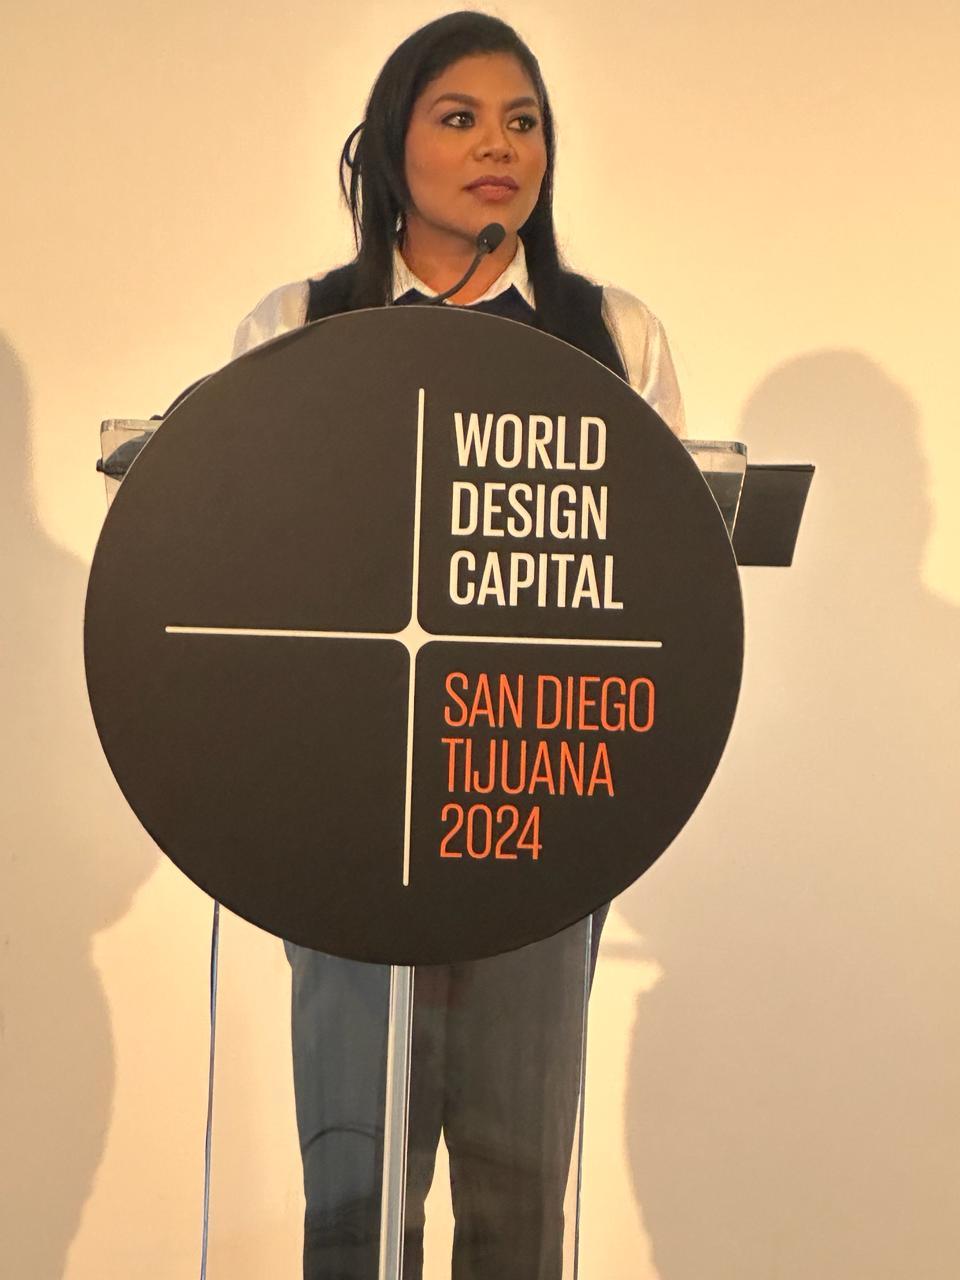 Vivamos San Diego y Tijuana a través del diseño: Montserrat Caballero en evento inicial de wdc 2024